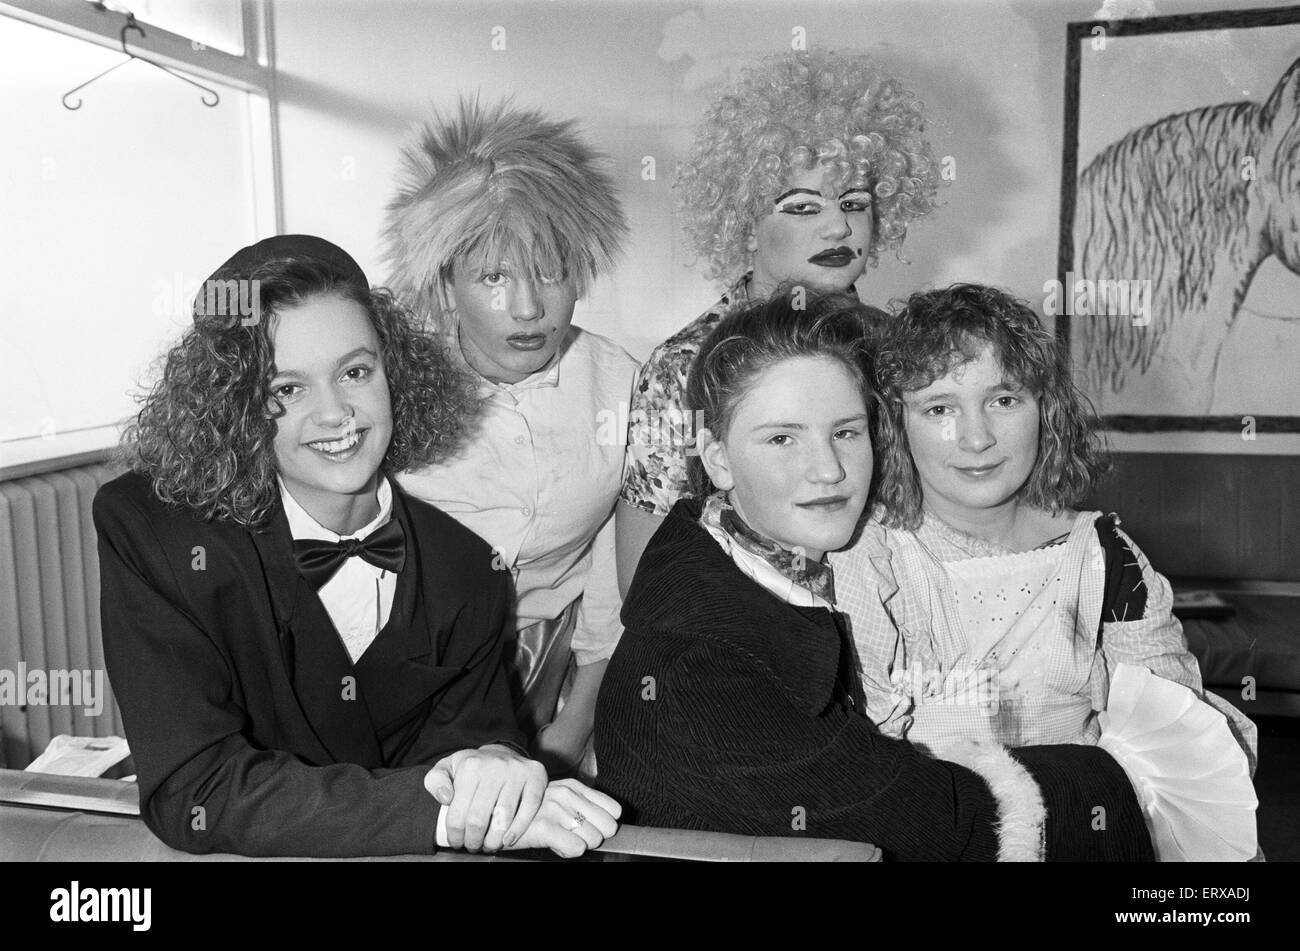 L'École secondaire Thornhill, Dewsbury a participé à la comédie de Cendrillon. 12 décembre 1991. Banque D'Images